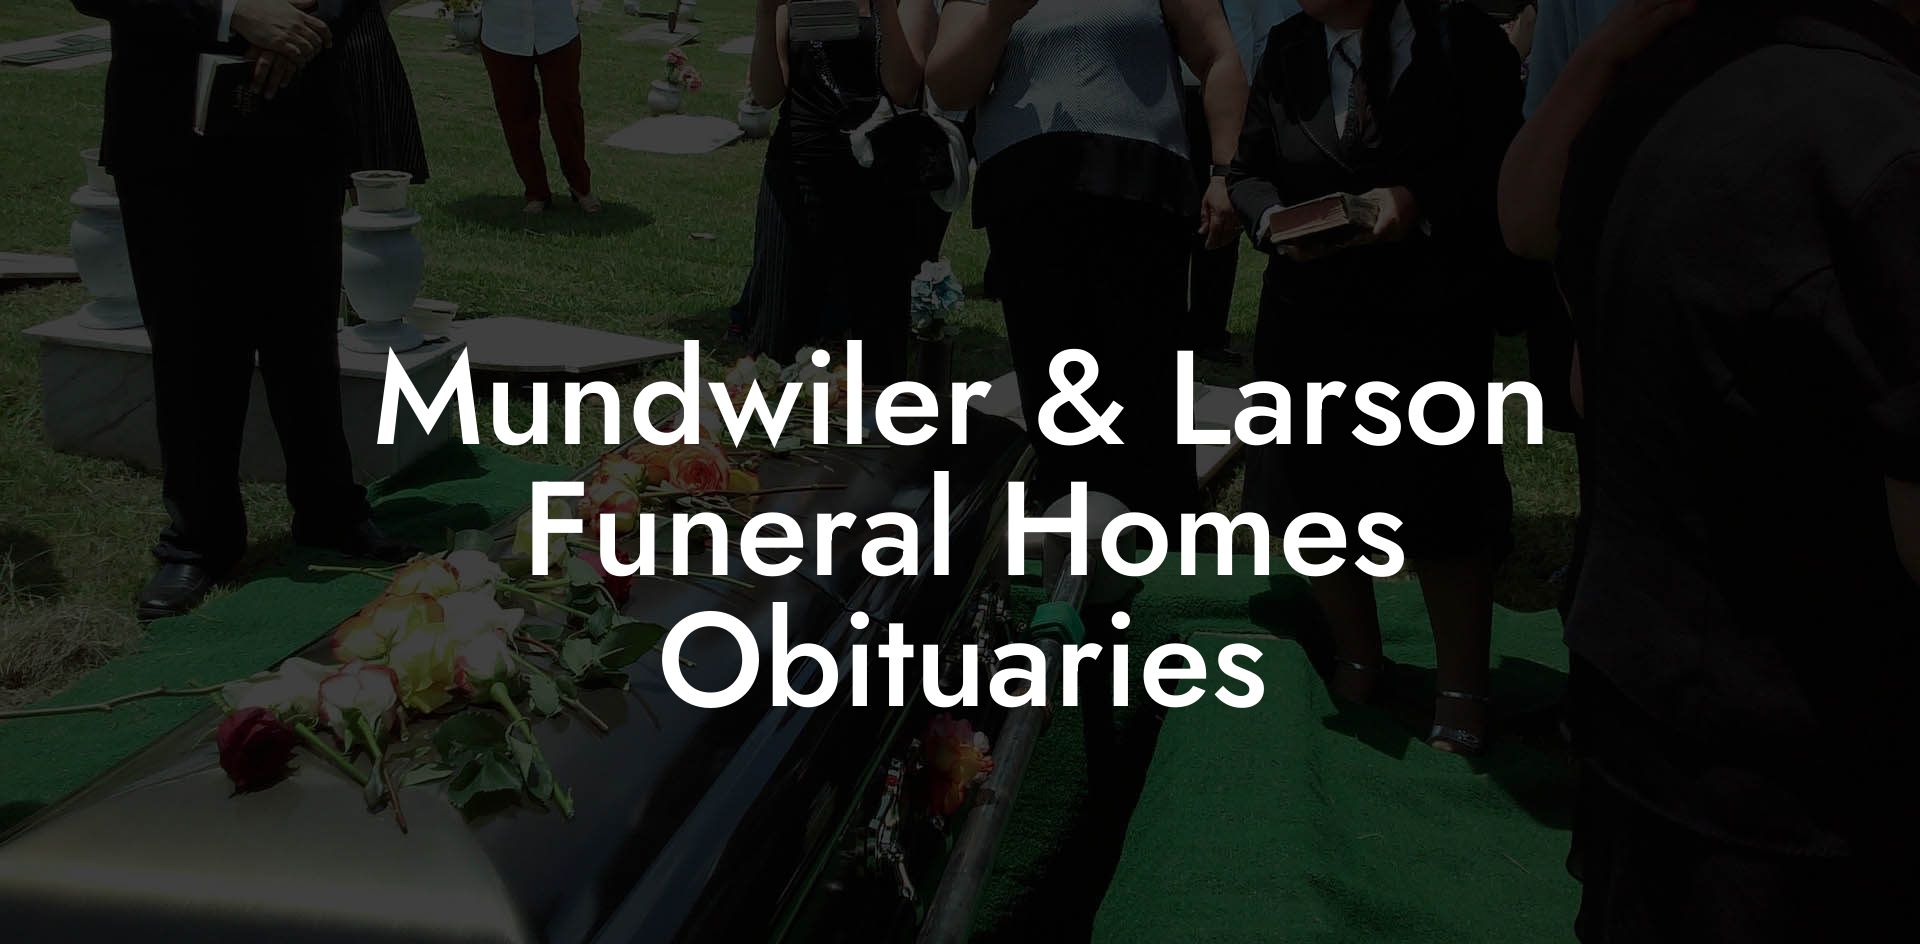 Mundwiler & Larson Funeral Homes Obituaries